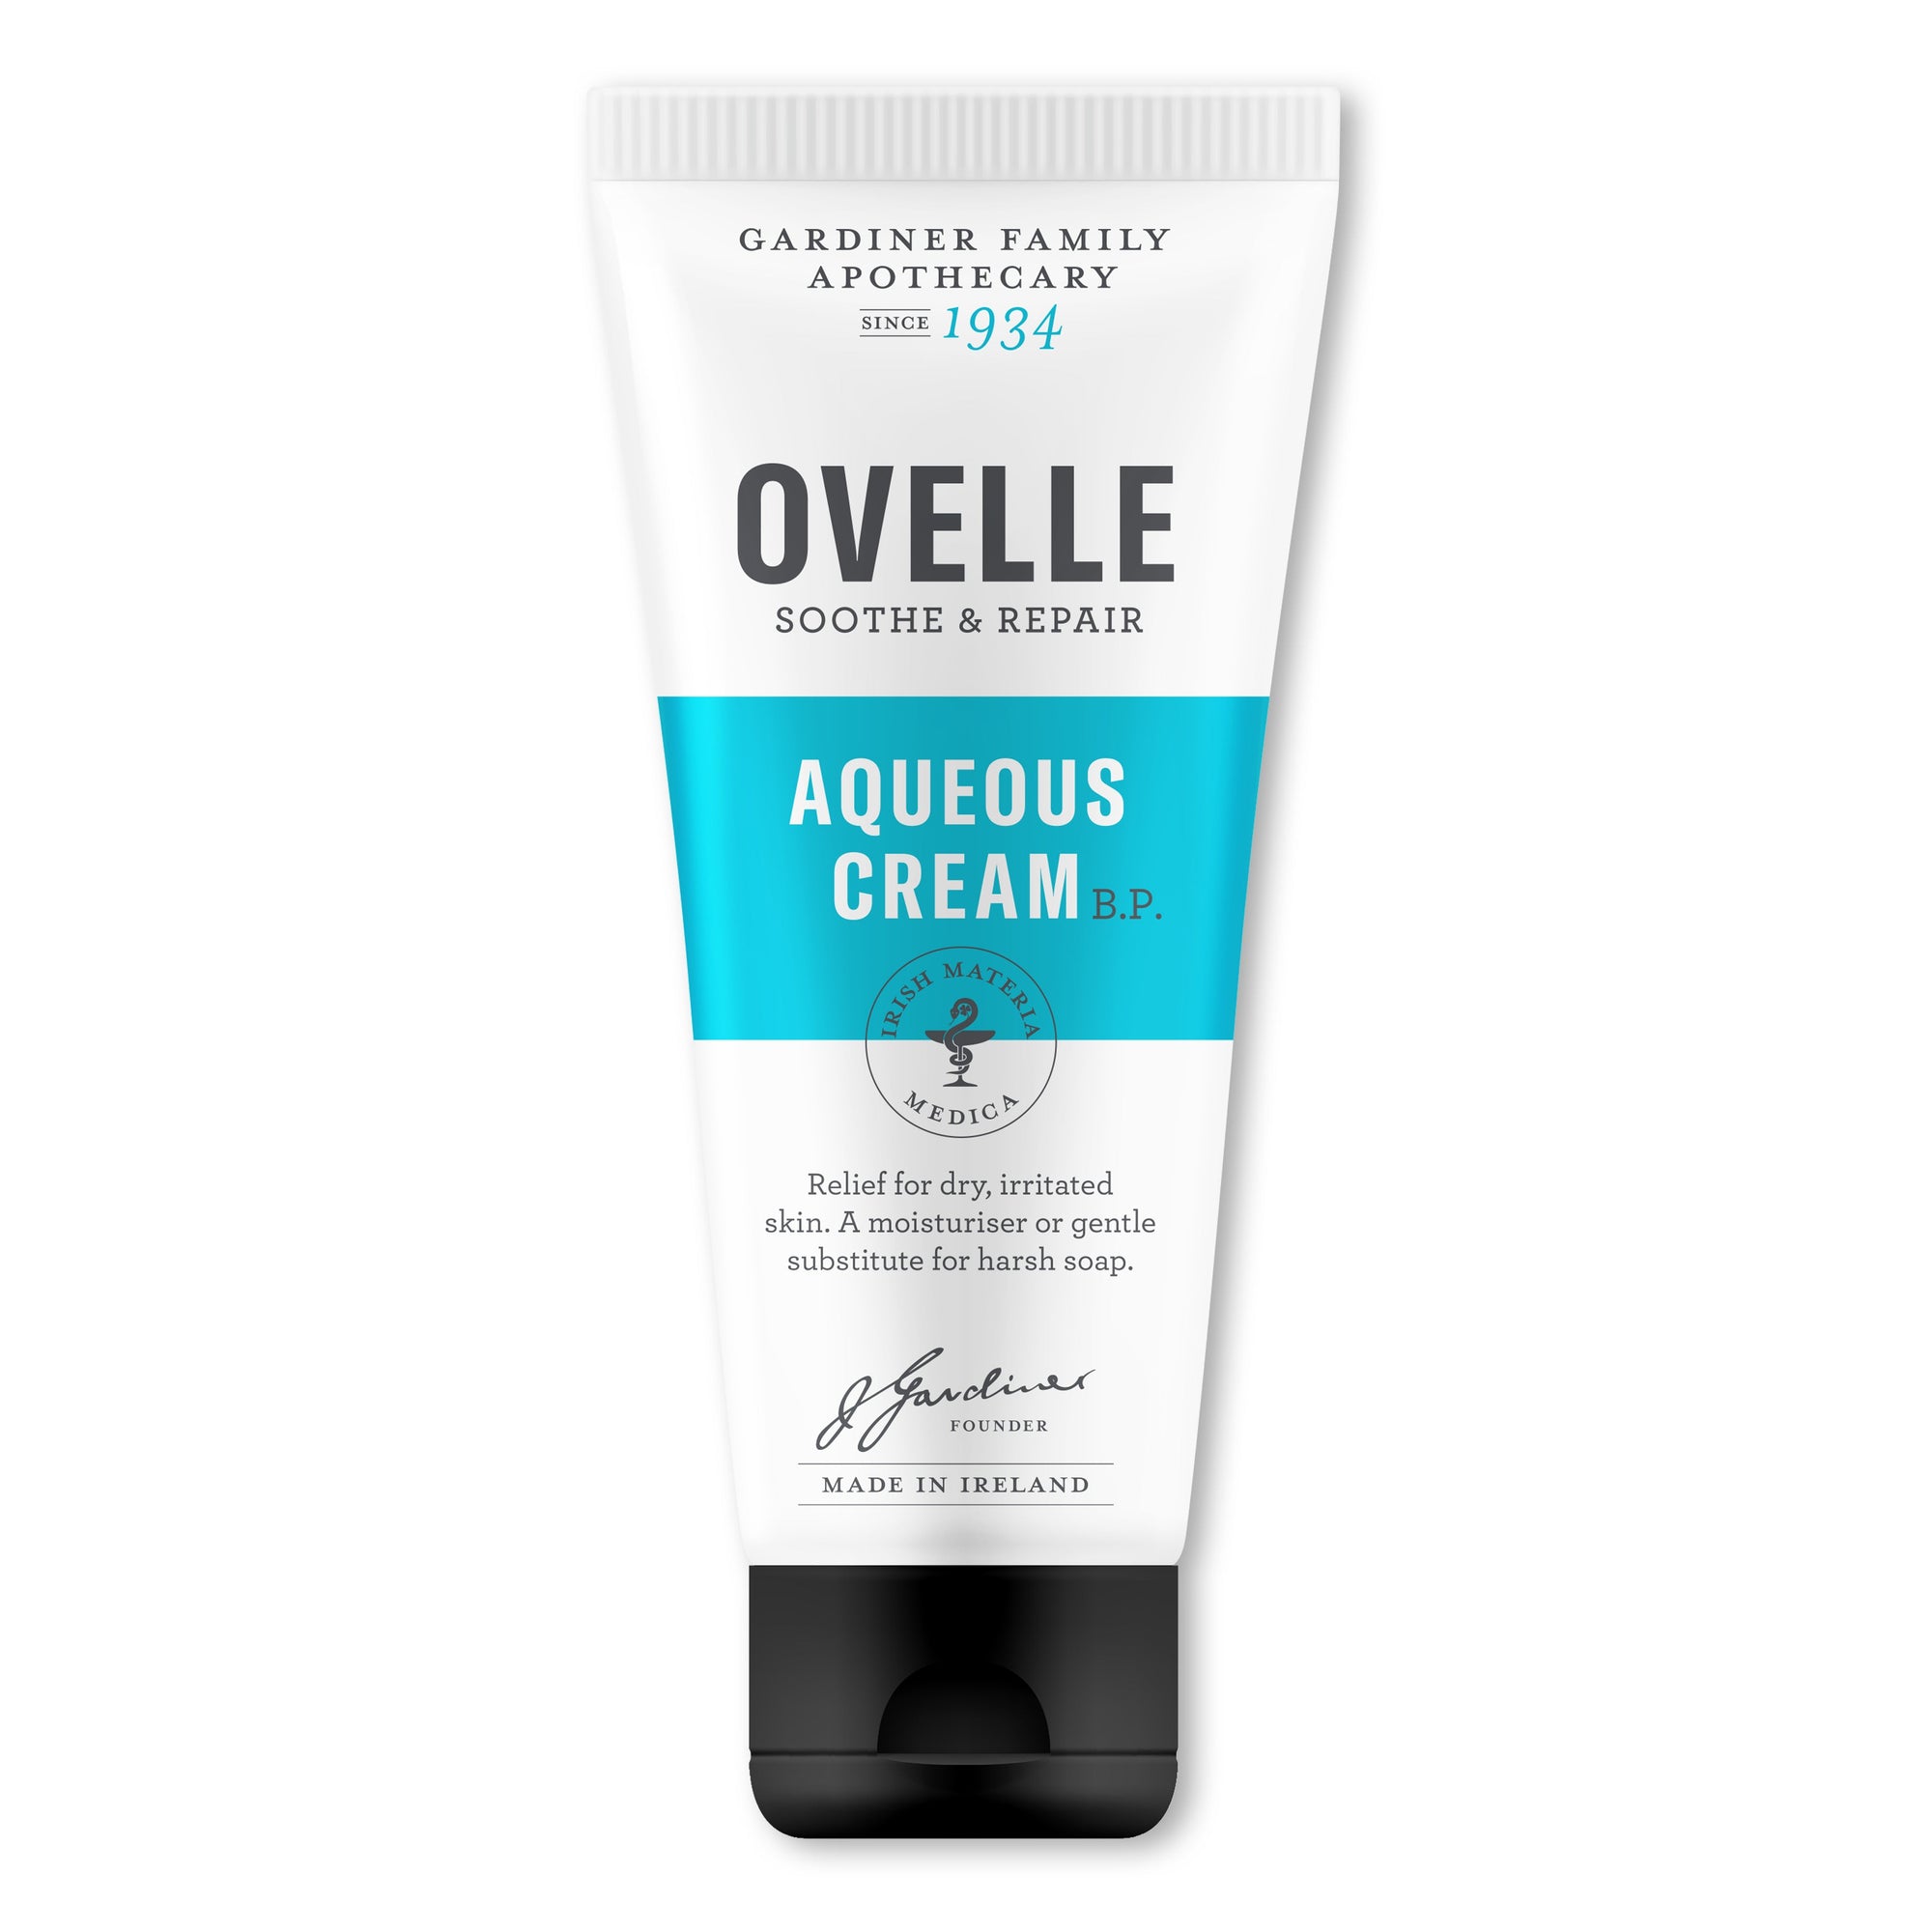 Ovelle 滋潤霜250毫升 / Ovelle Aqueous Cream B.P. 250ml